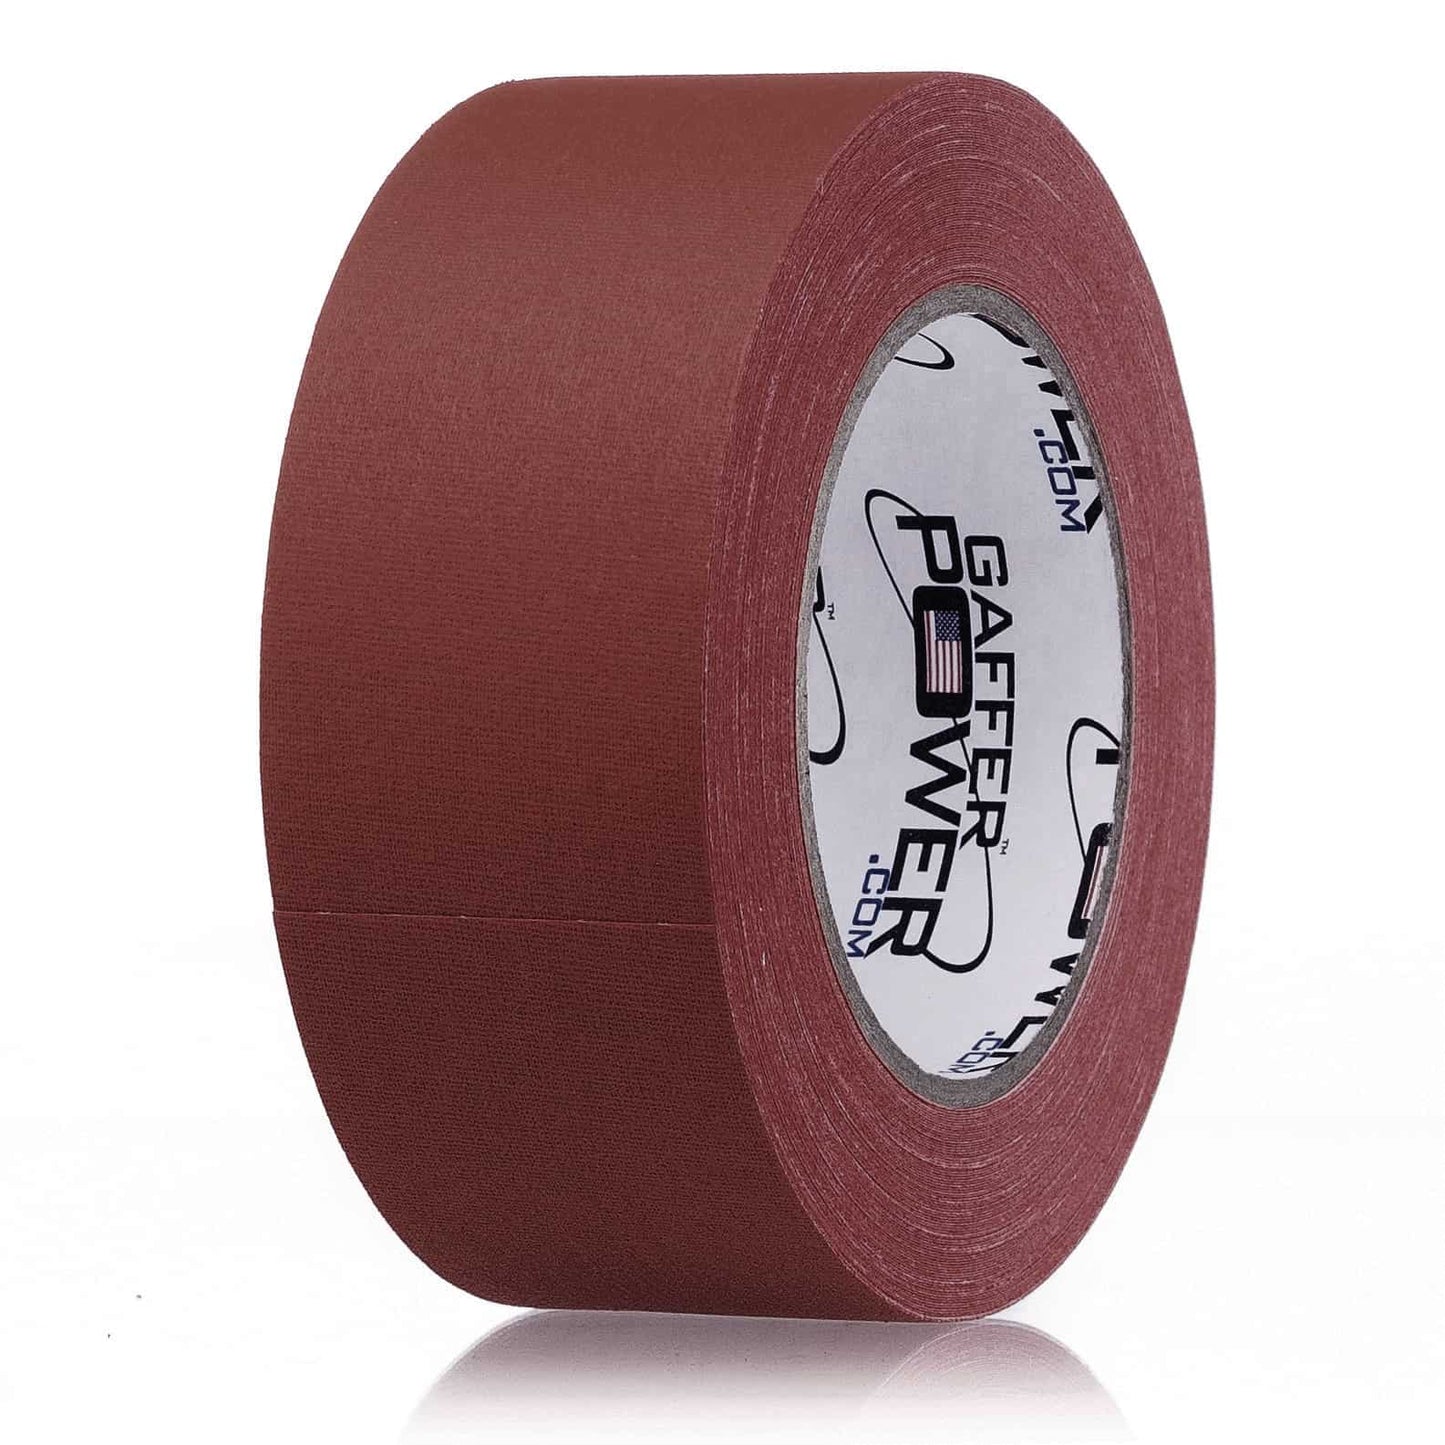 2 inch by 30 yard roll of burgundy gaff tape